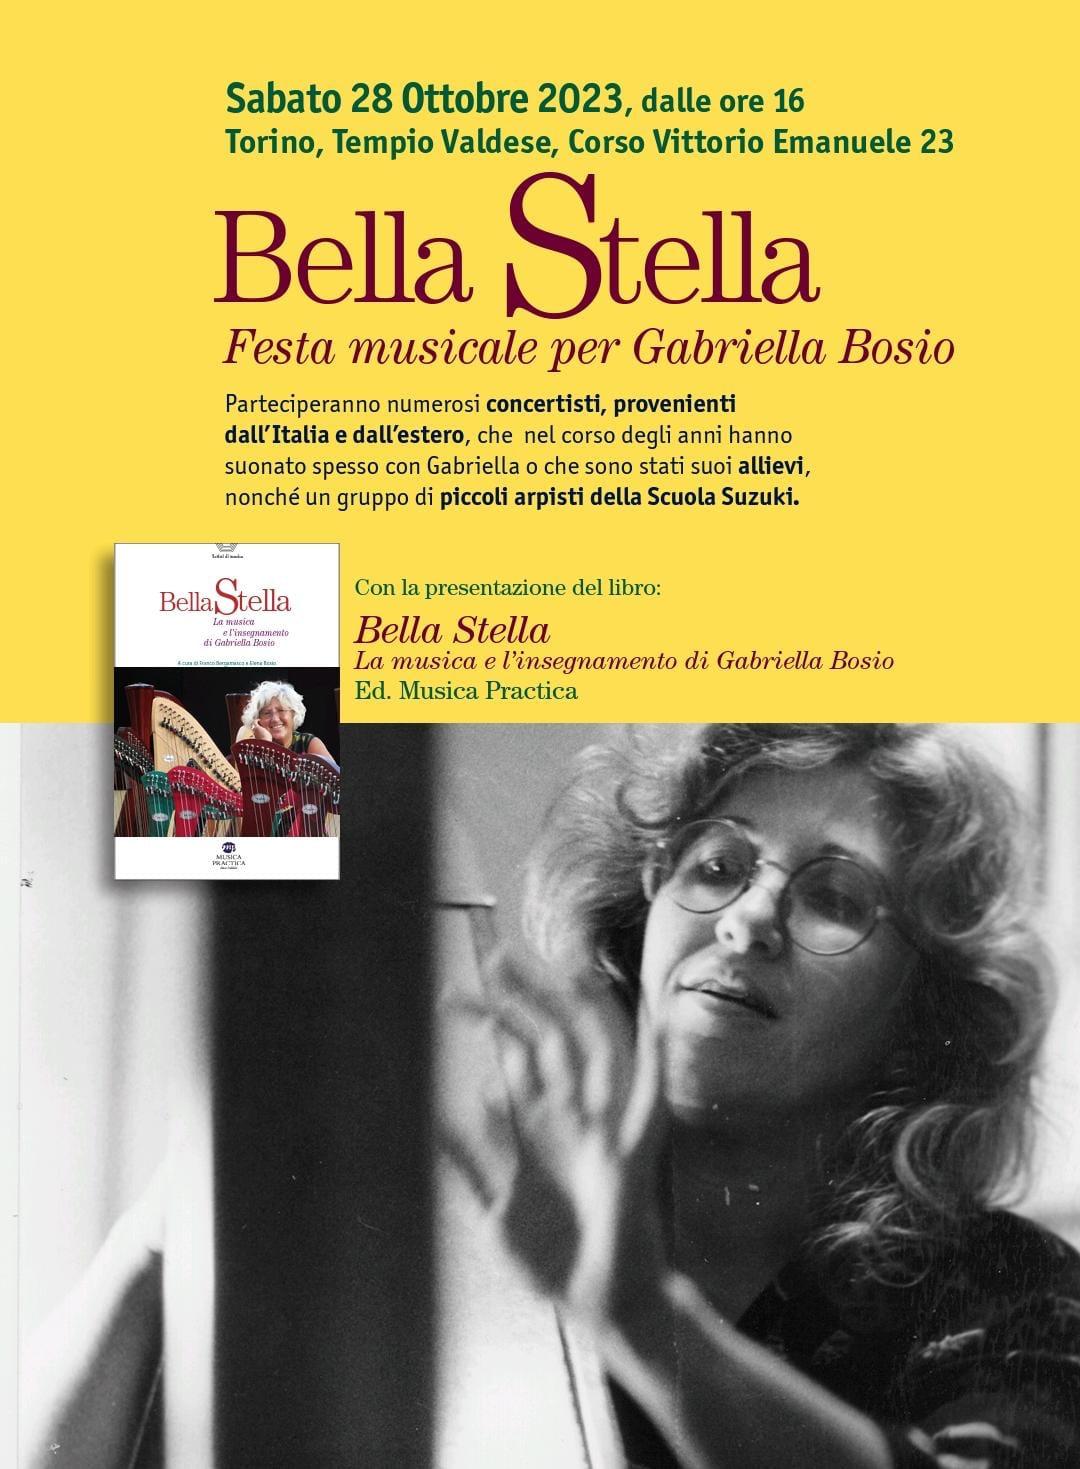 Bella Stella – Festa musicale per Gabriella Bosio